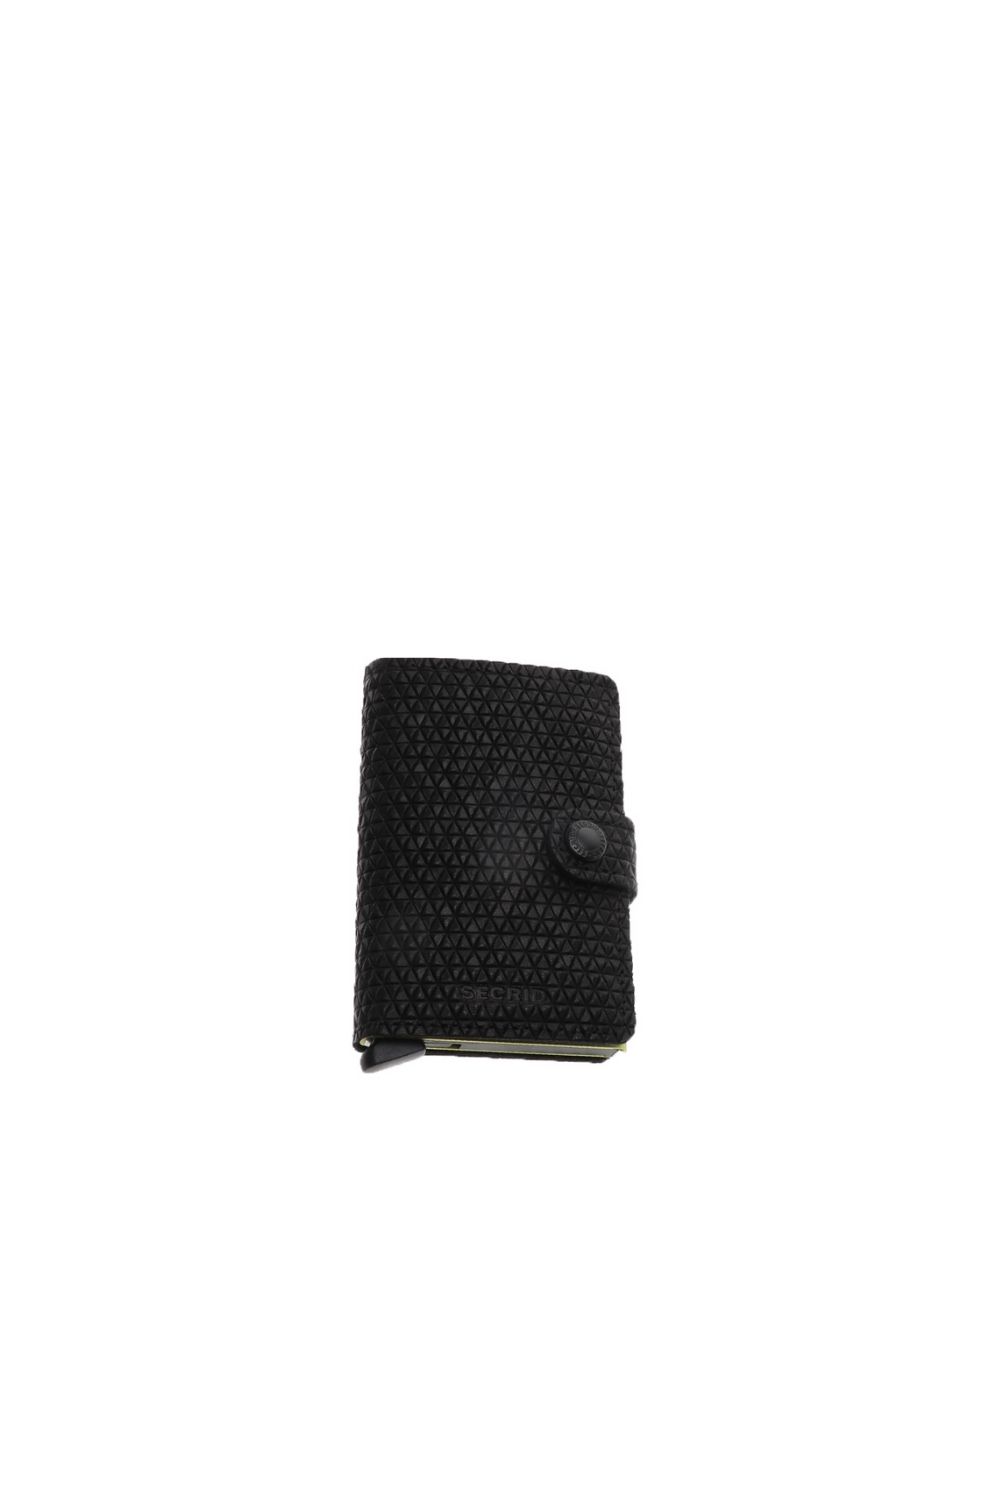 SECRID – Δερμάτινο πορτοφόλι SECRID Miniwallet Diamod μαύρο 1768114.0-0071